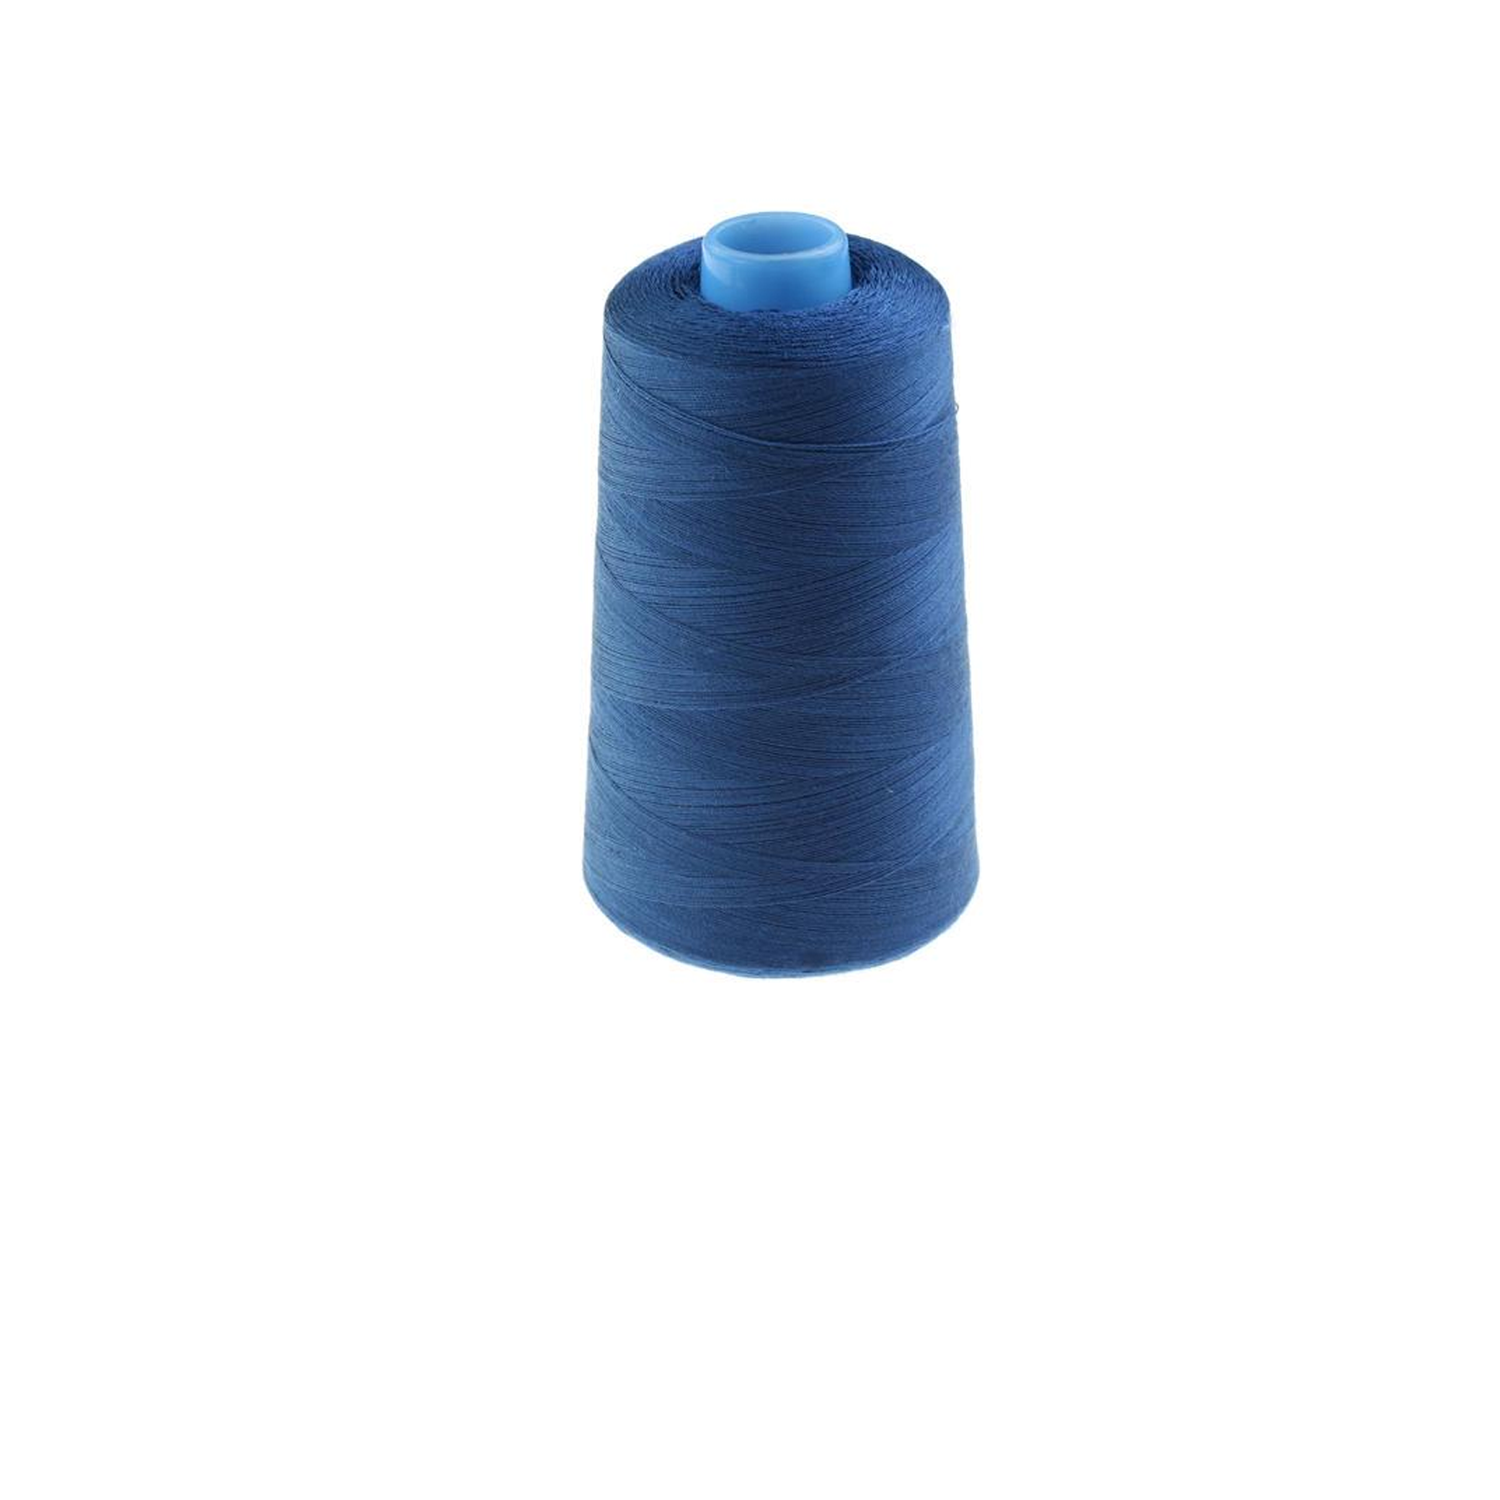 Thread Blue mH569